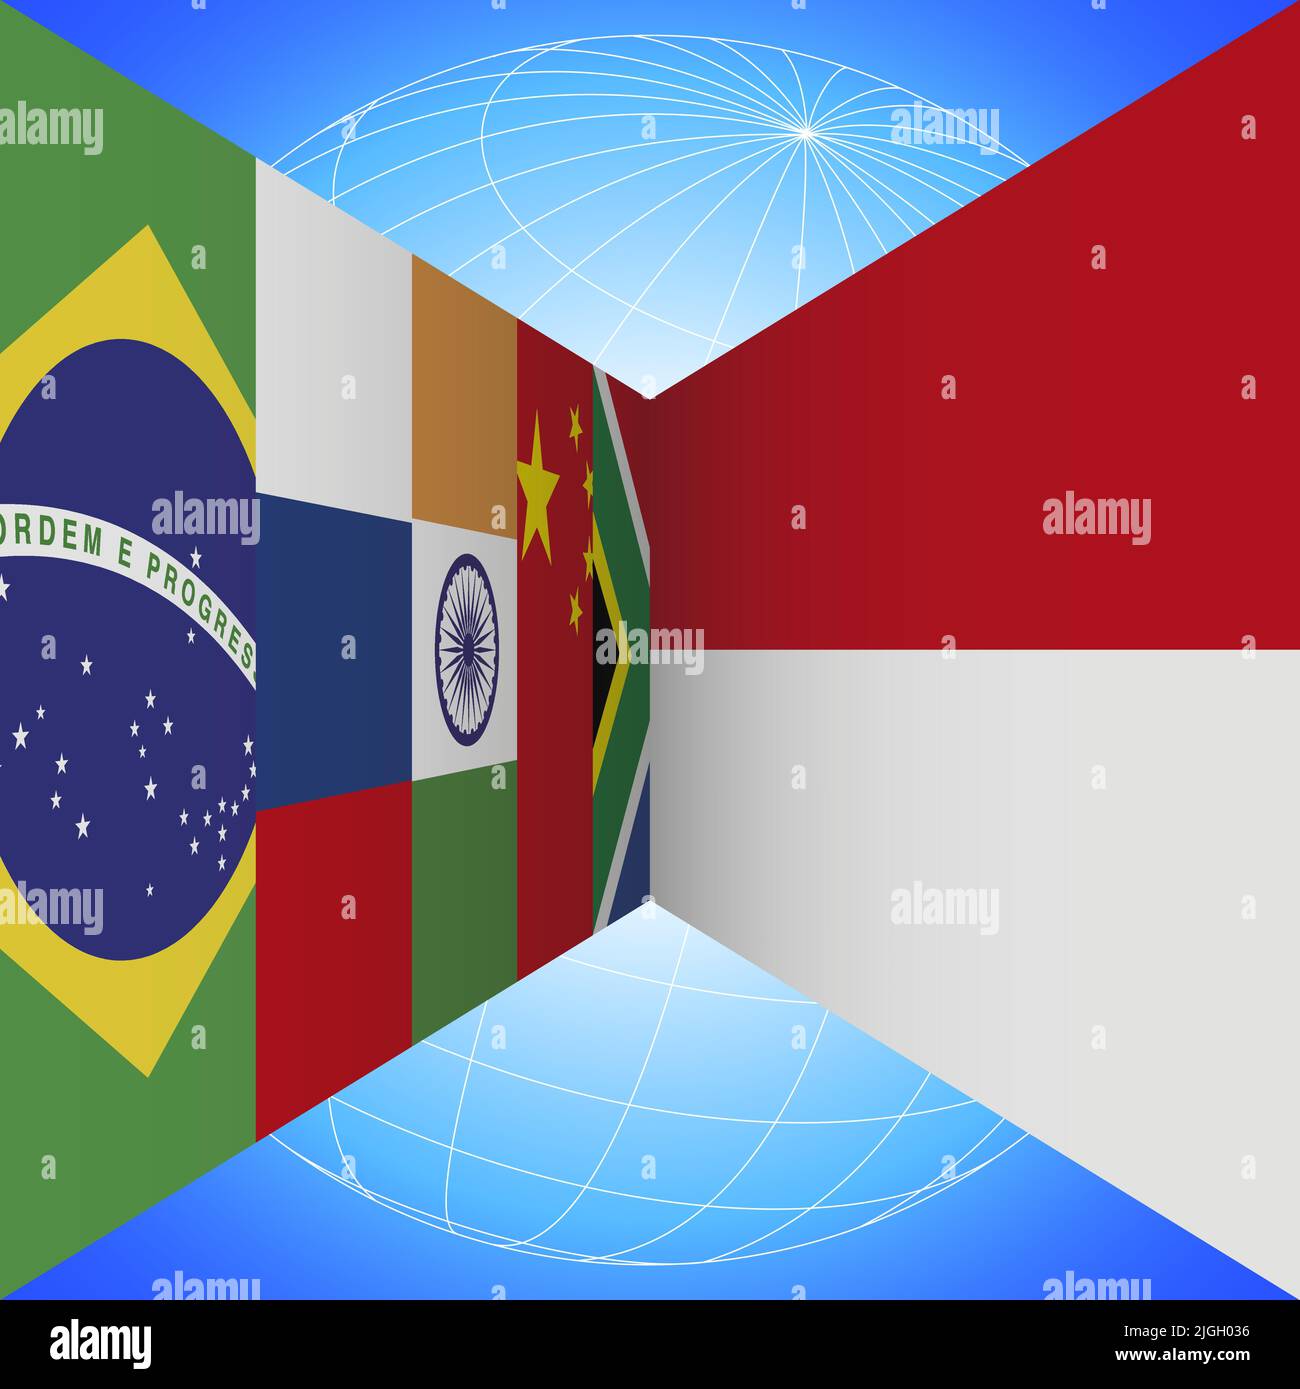 Banderas BRICS Países e Indonesia bandera con globo terrestre en perspectiva sobre el fondo azul, ilustración de vectores Ilustración del Vector